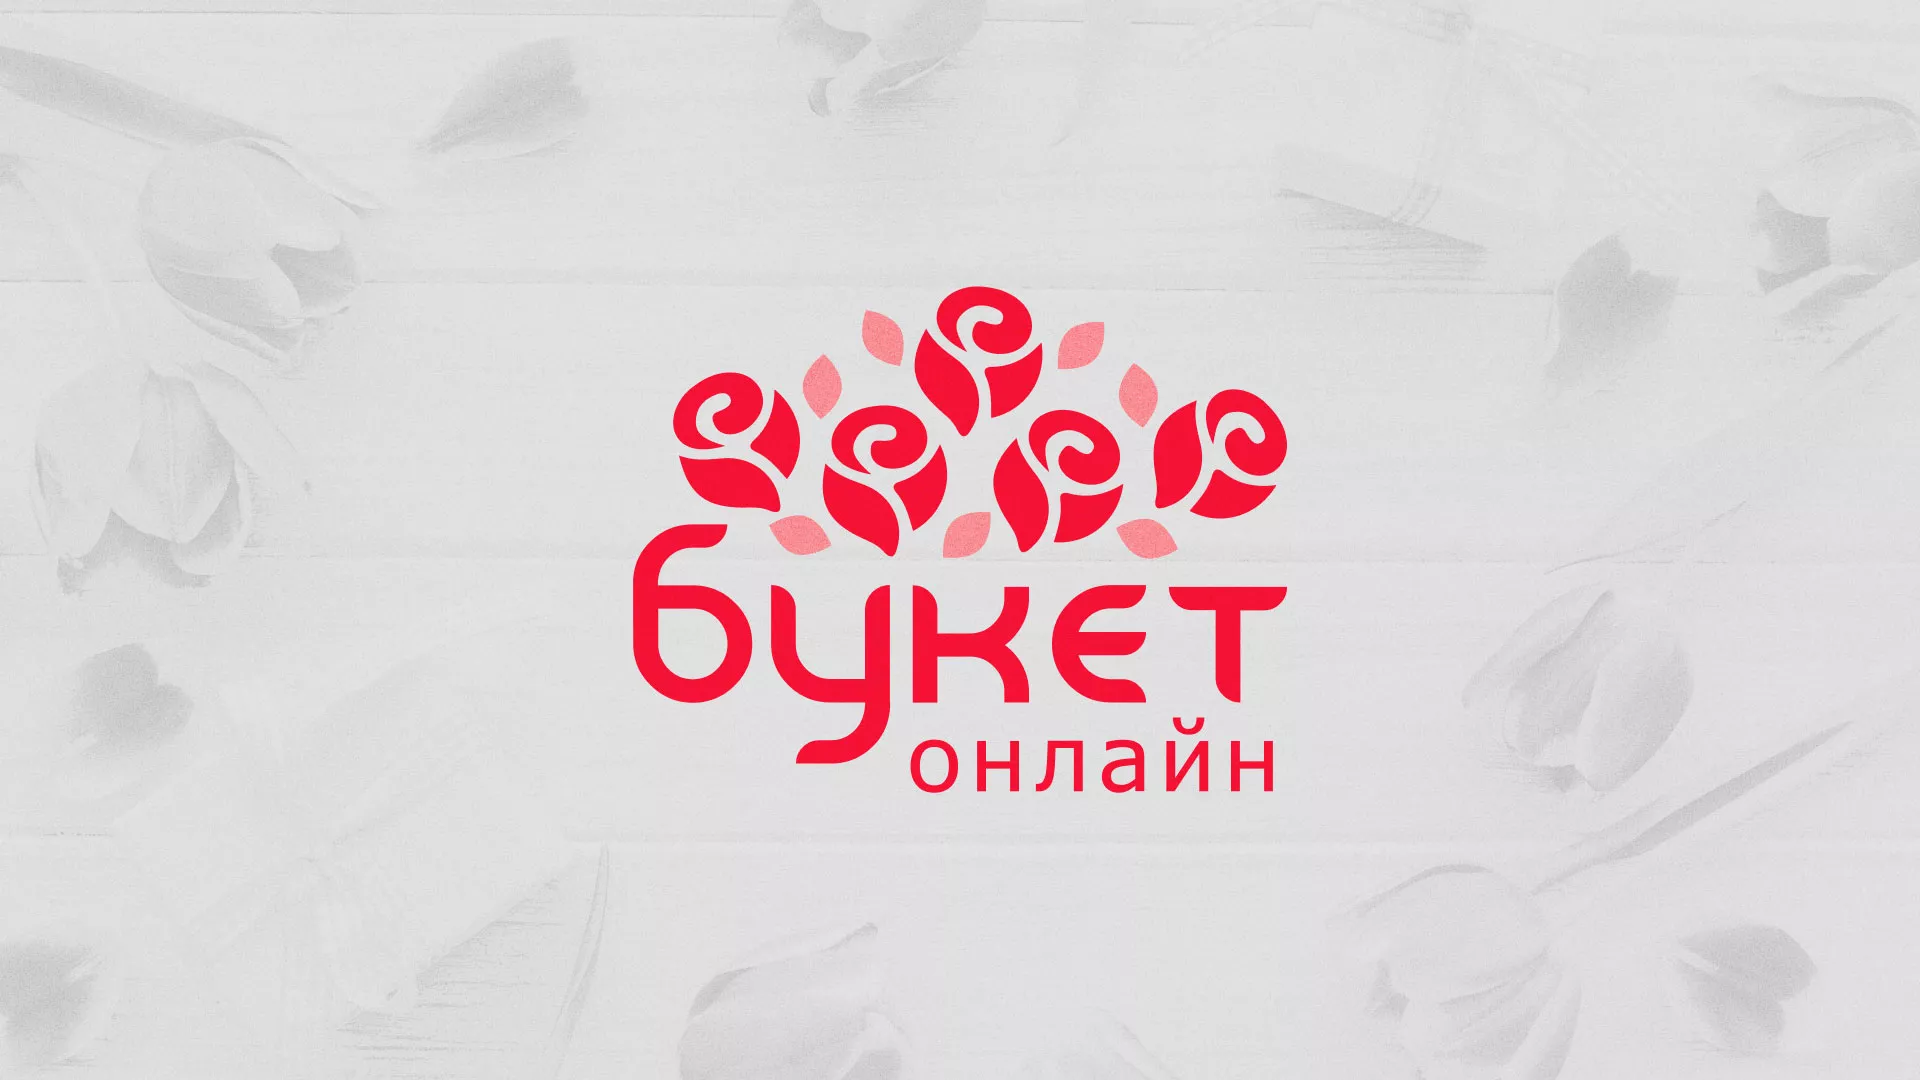 Создание интернет-магазина «Букет-онлайн» по цветам в Долинске